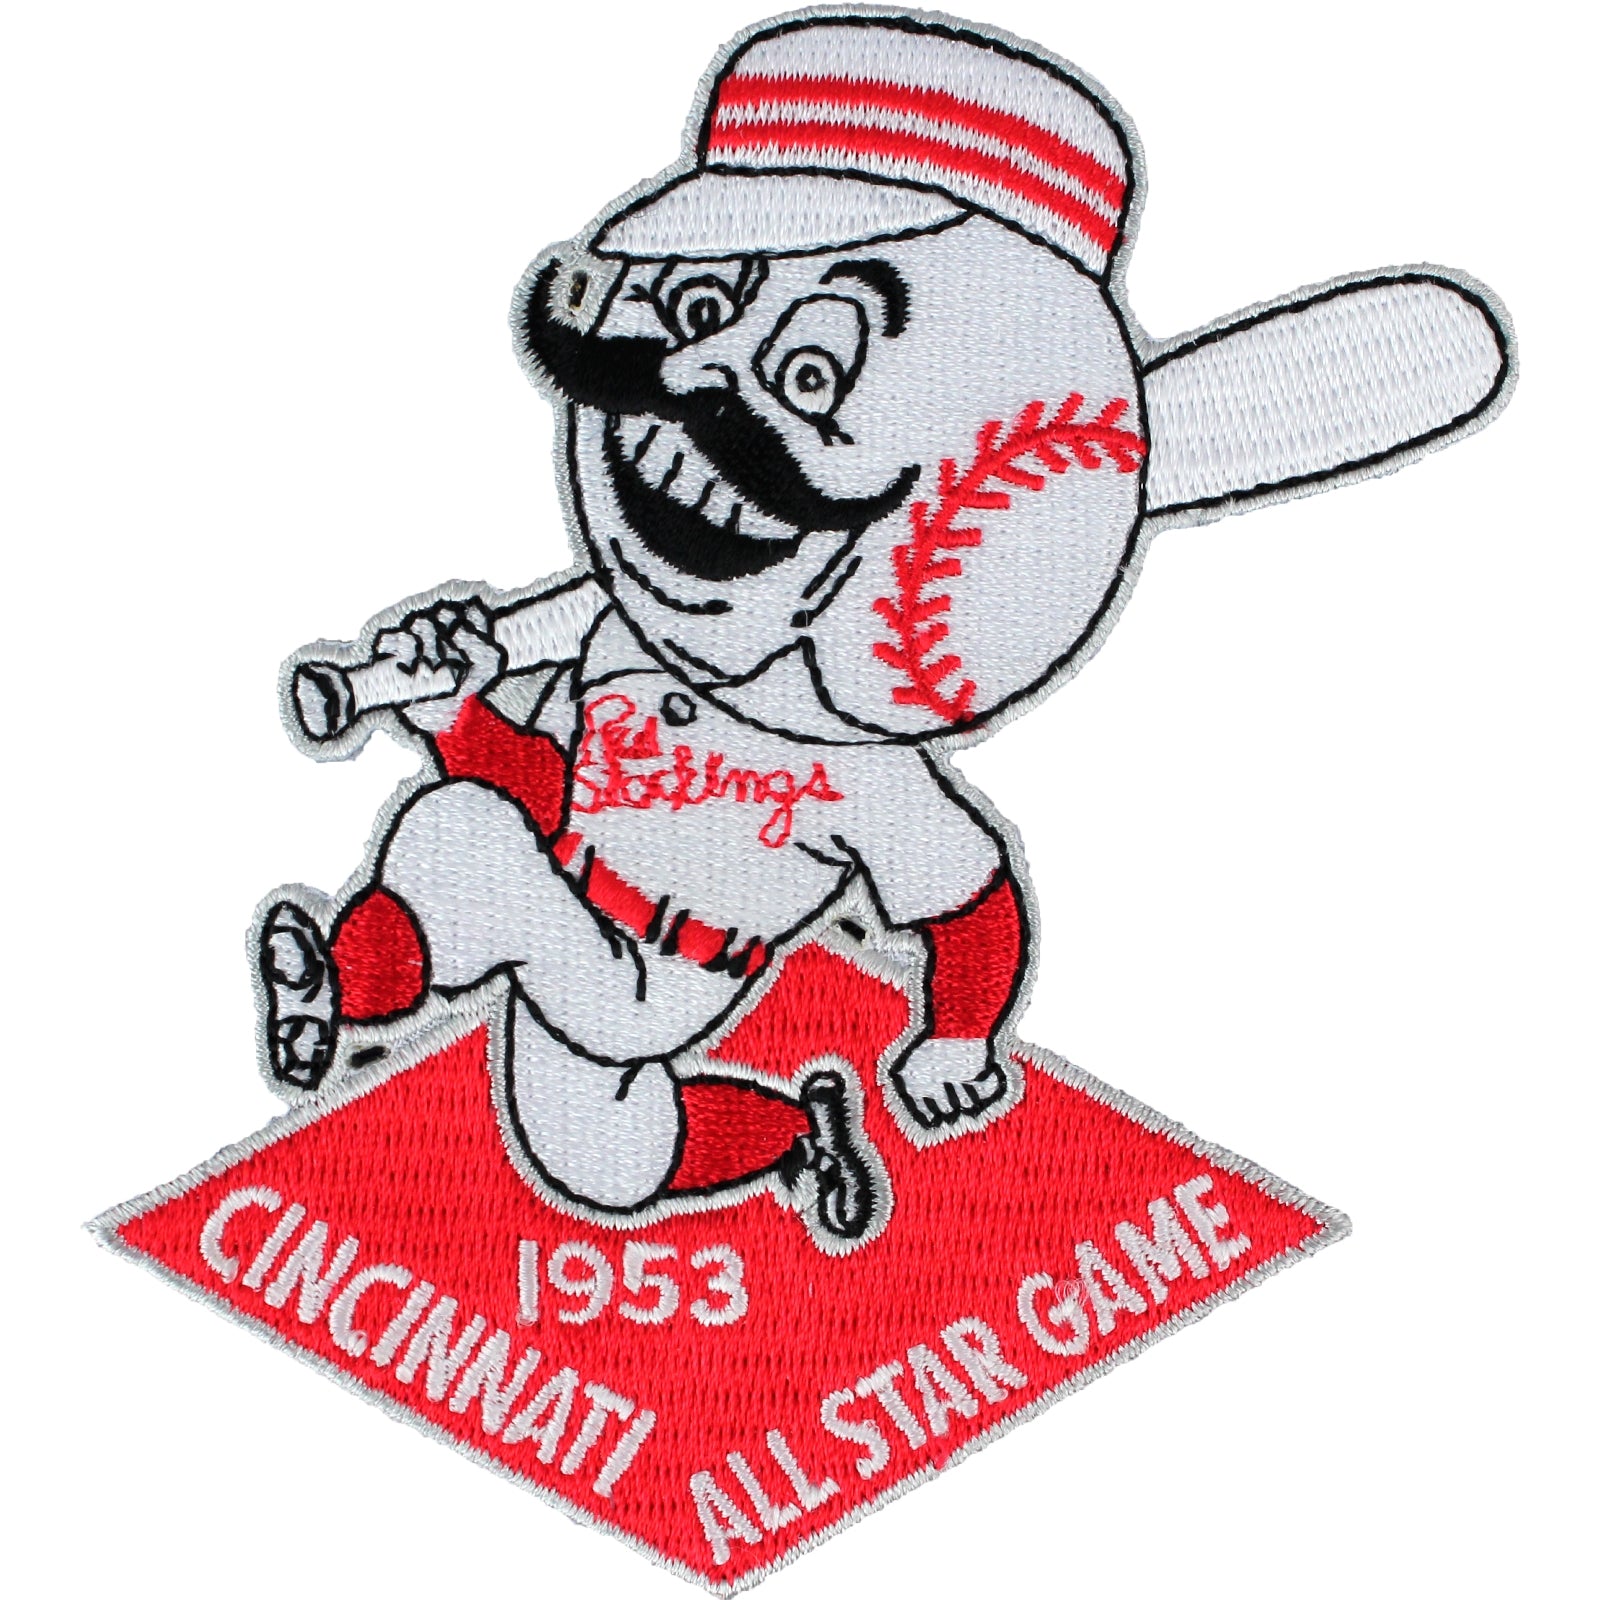 Cincinnati Reds All Star Game Logo revealed